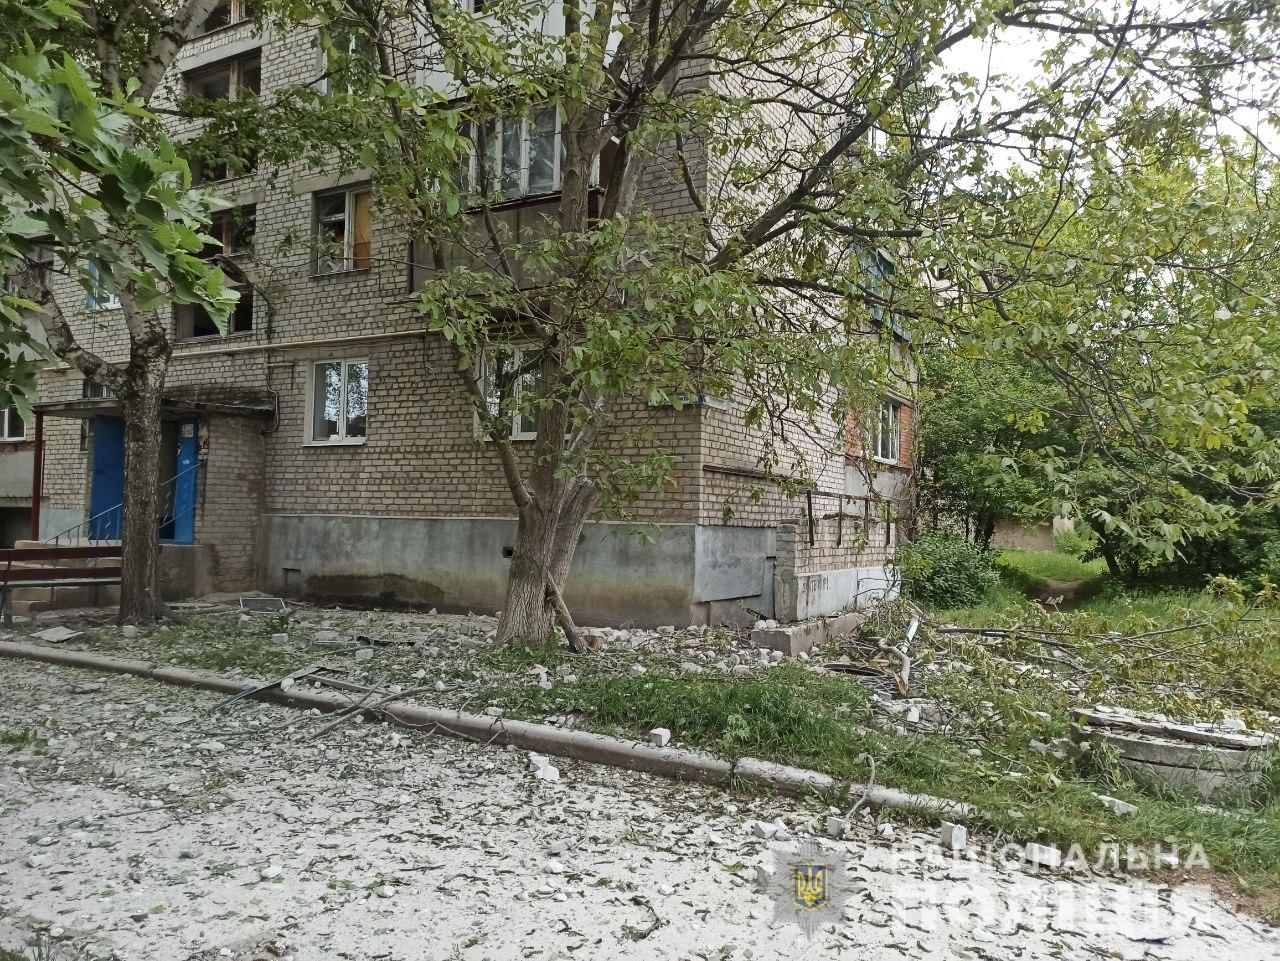 Трое мирных жителей Донецкой области погибли 14 мая. Под прицелом оказались 11 населенных пунктов, — полиция (ФОТО) 1